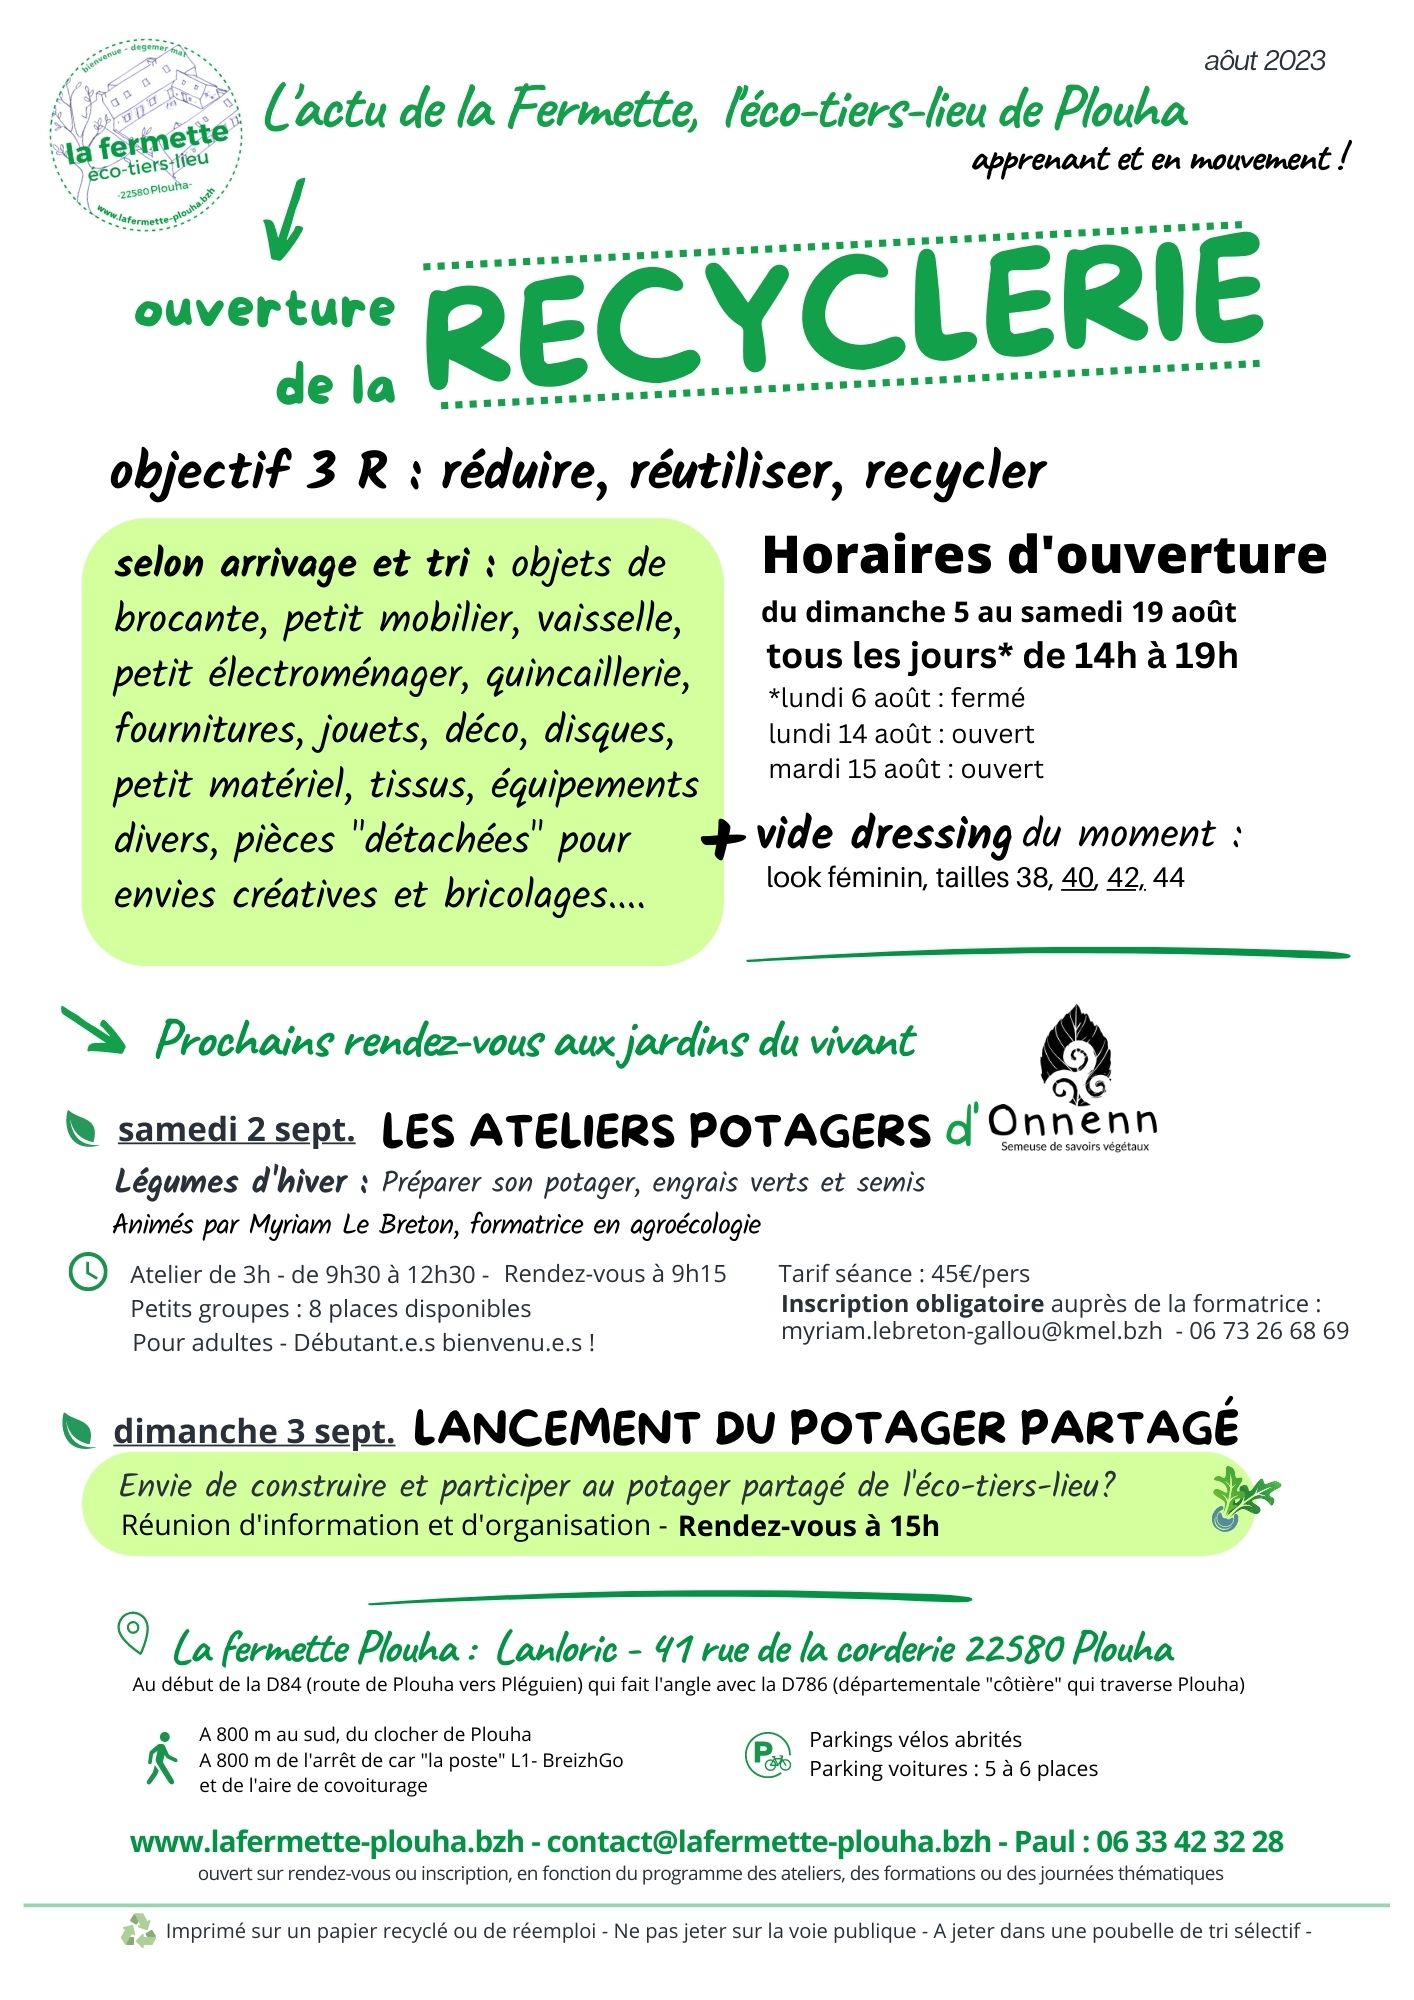 Ouverture-Recyclerie-Fermette-eco-tiers-lieu-Plouha-Aout-23